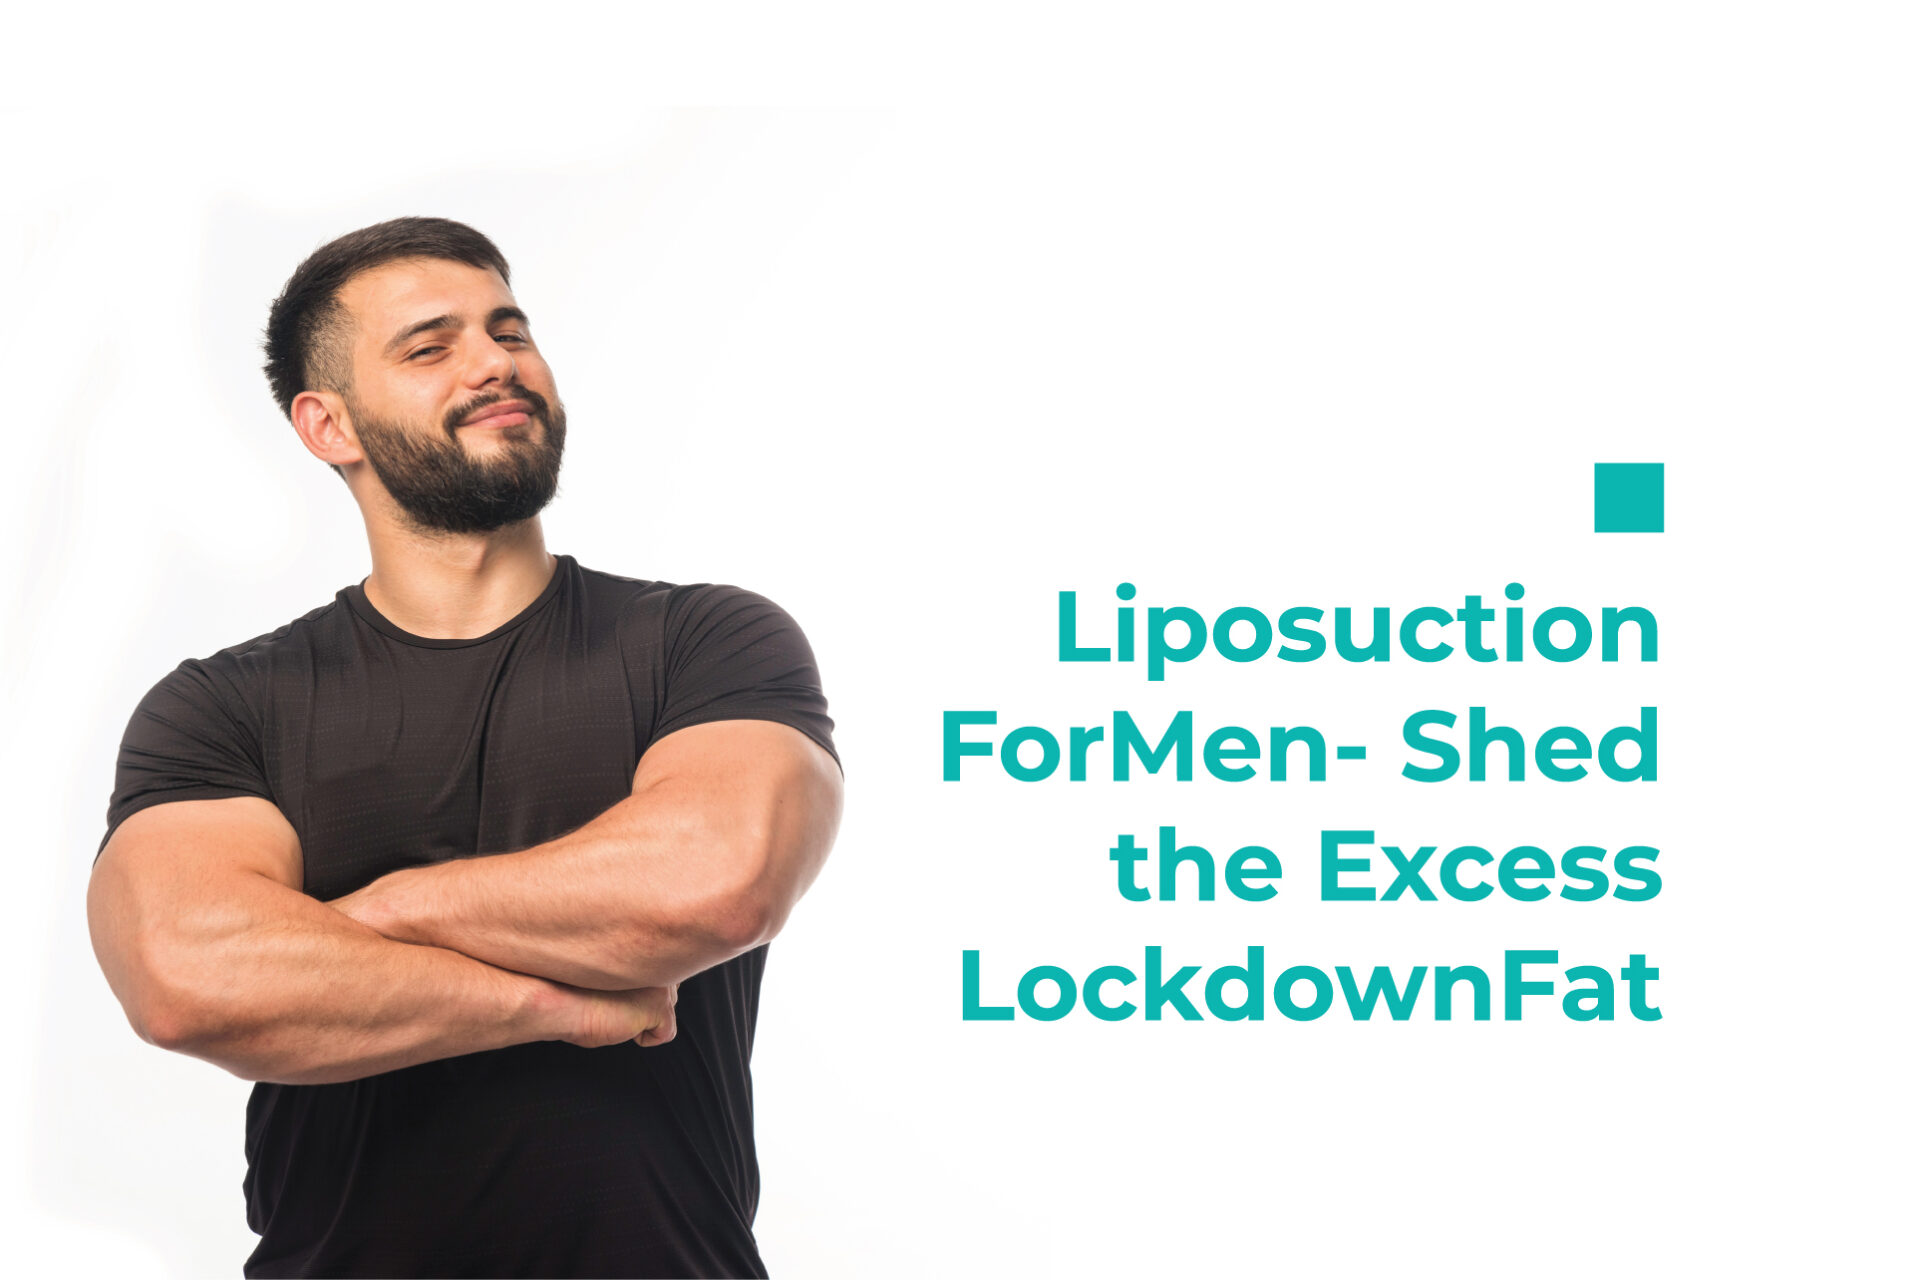 Liposuction For Men